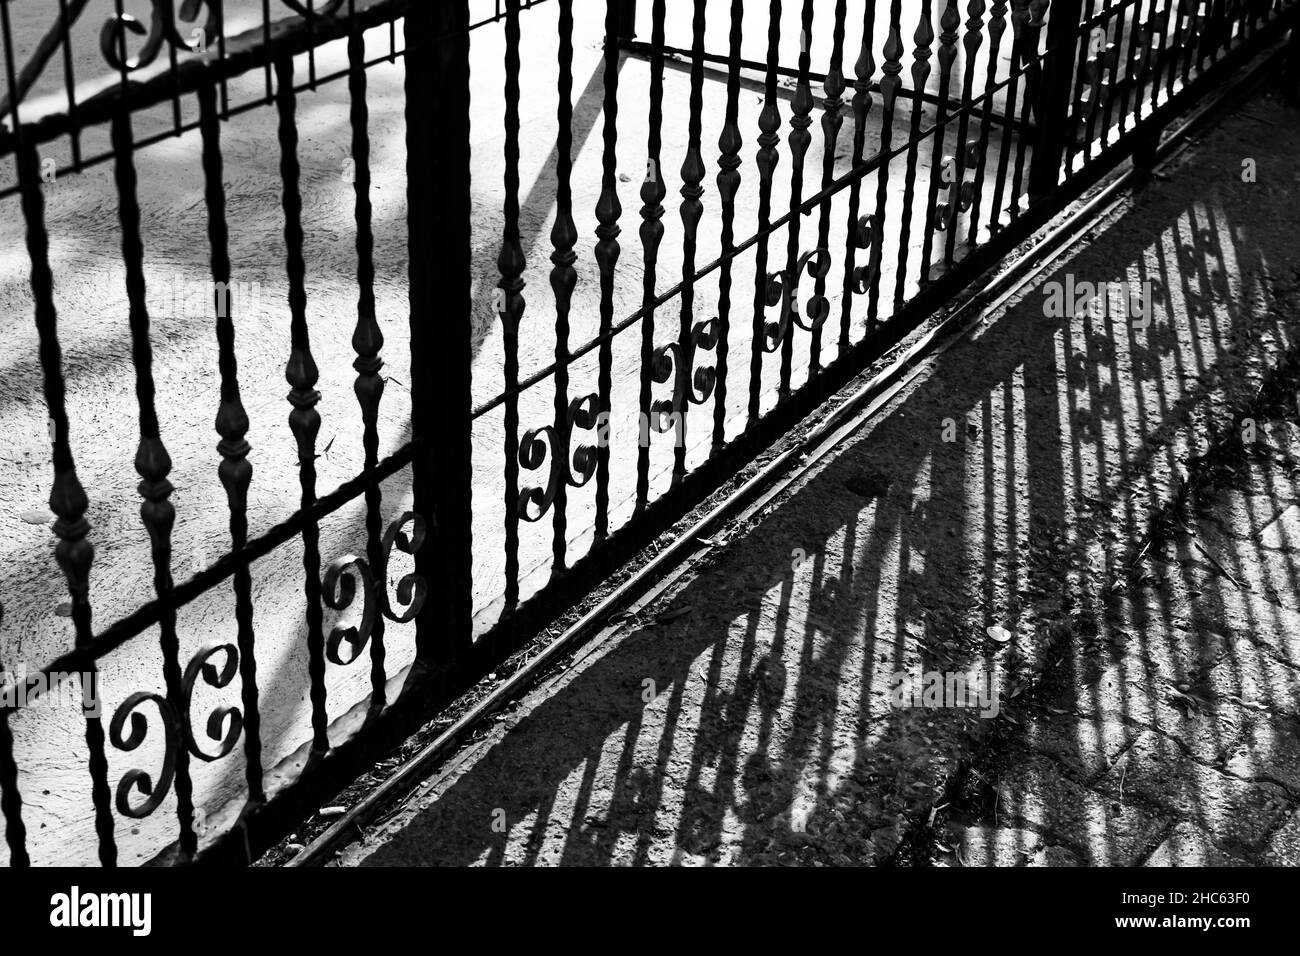 Photo en niveaux de gris d'une clôture en métal avec ombre sur le sol par une journée ensoleillée Banque D'Images